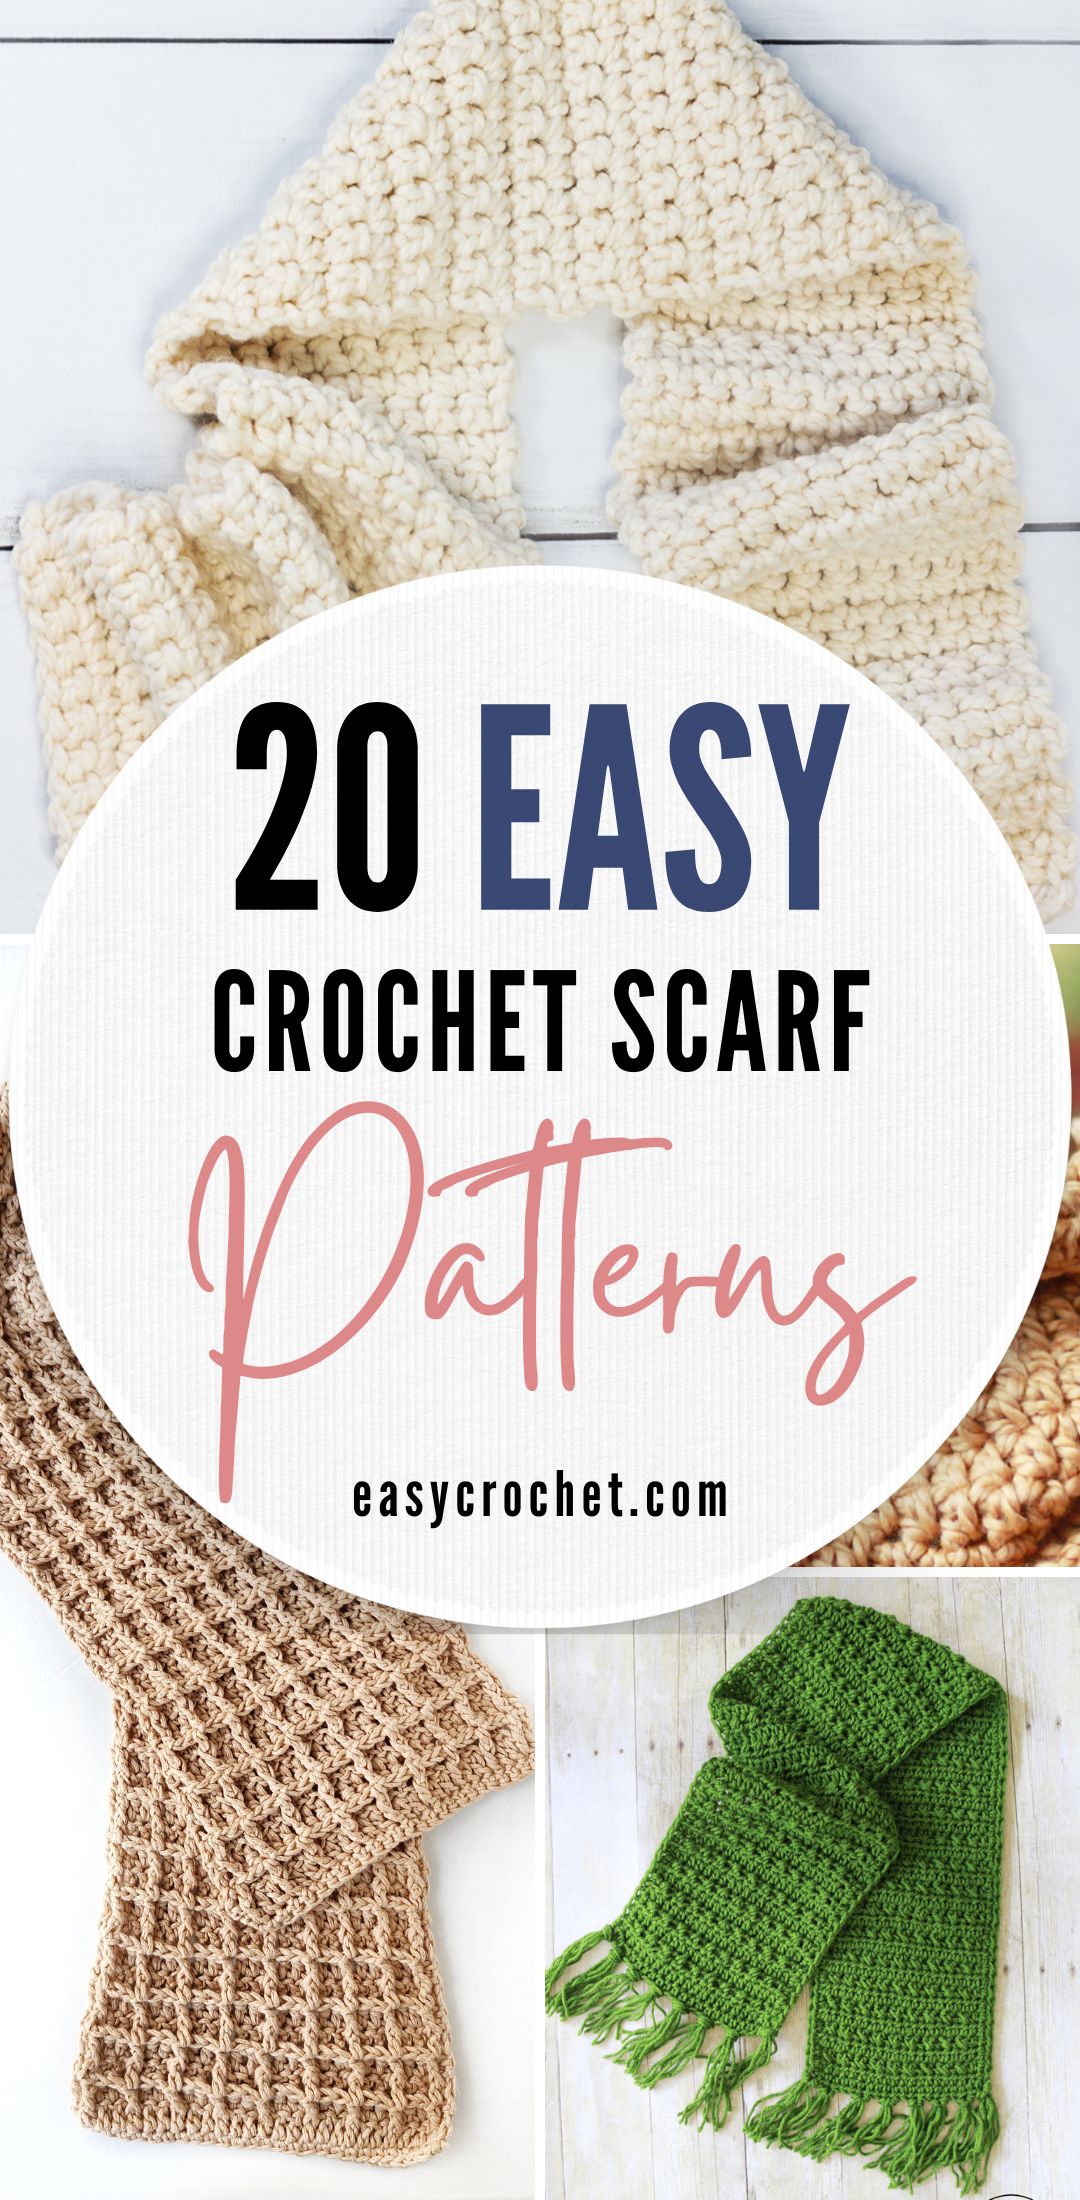 Easy Crochet Lace Scarf for Beginners - Make It Crochet